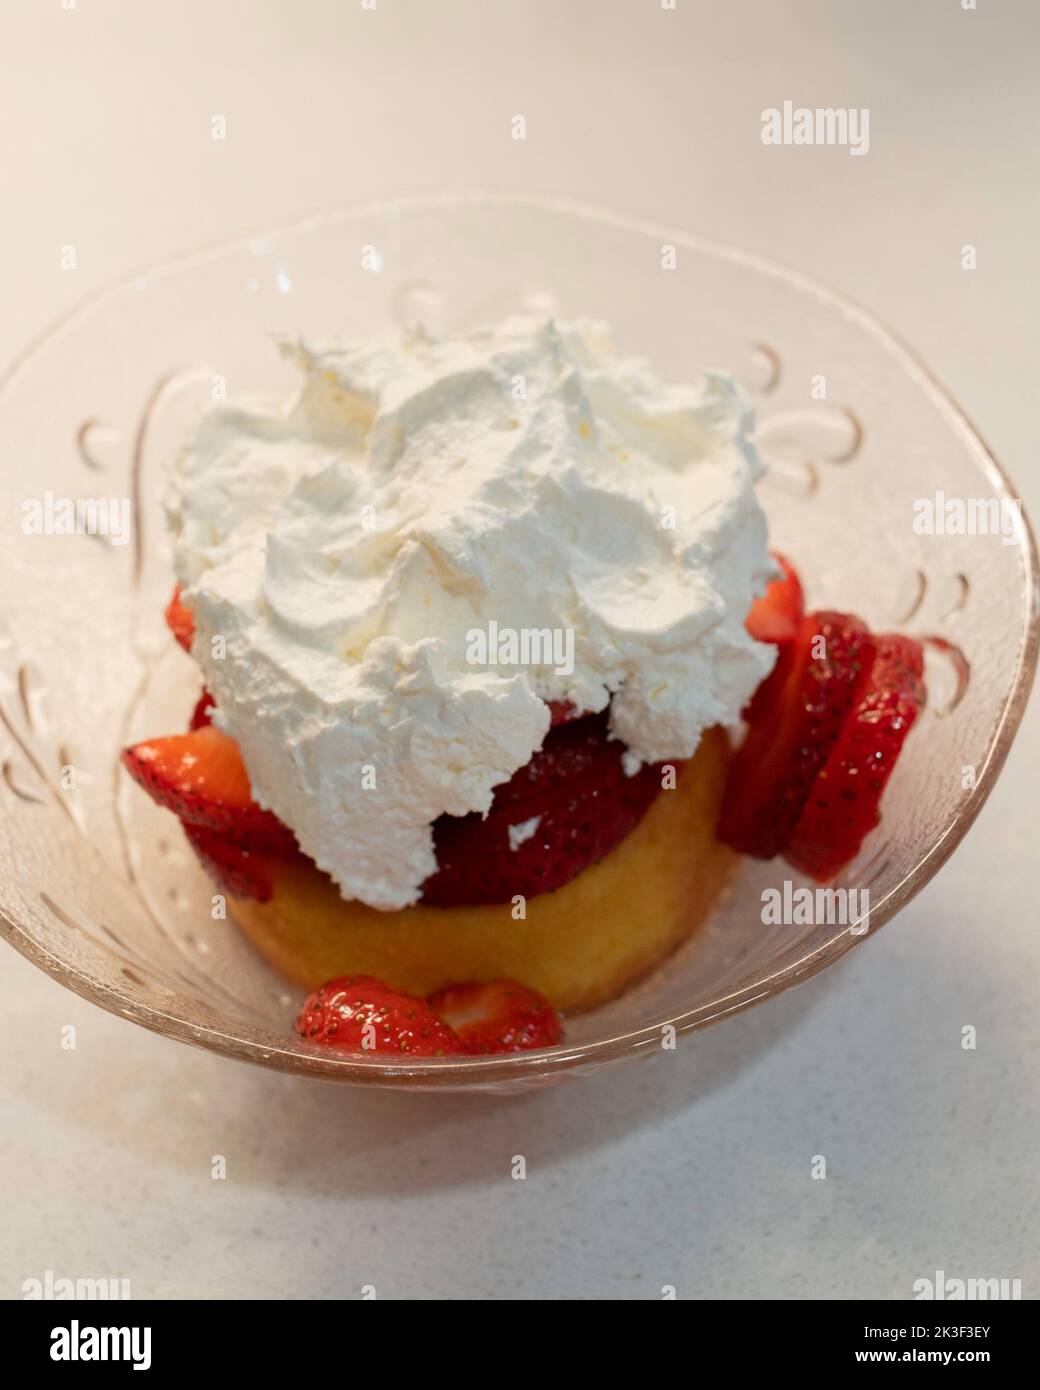 Pastel de fresa, compuesto de fresas frescas cortadas encima de una bizcocho con crema batida encima. Un postre americano. EE.UU. Foto de stock